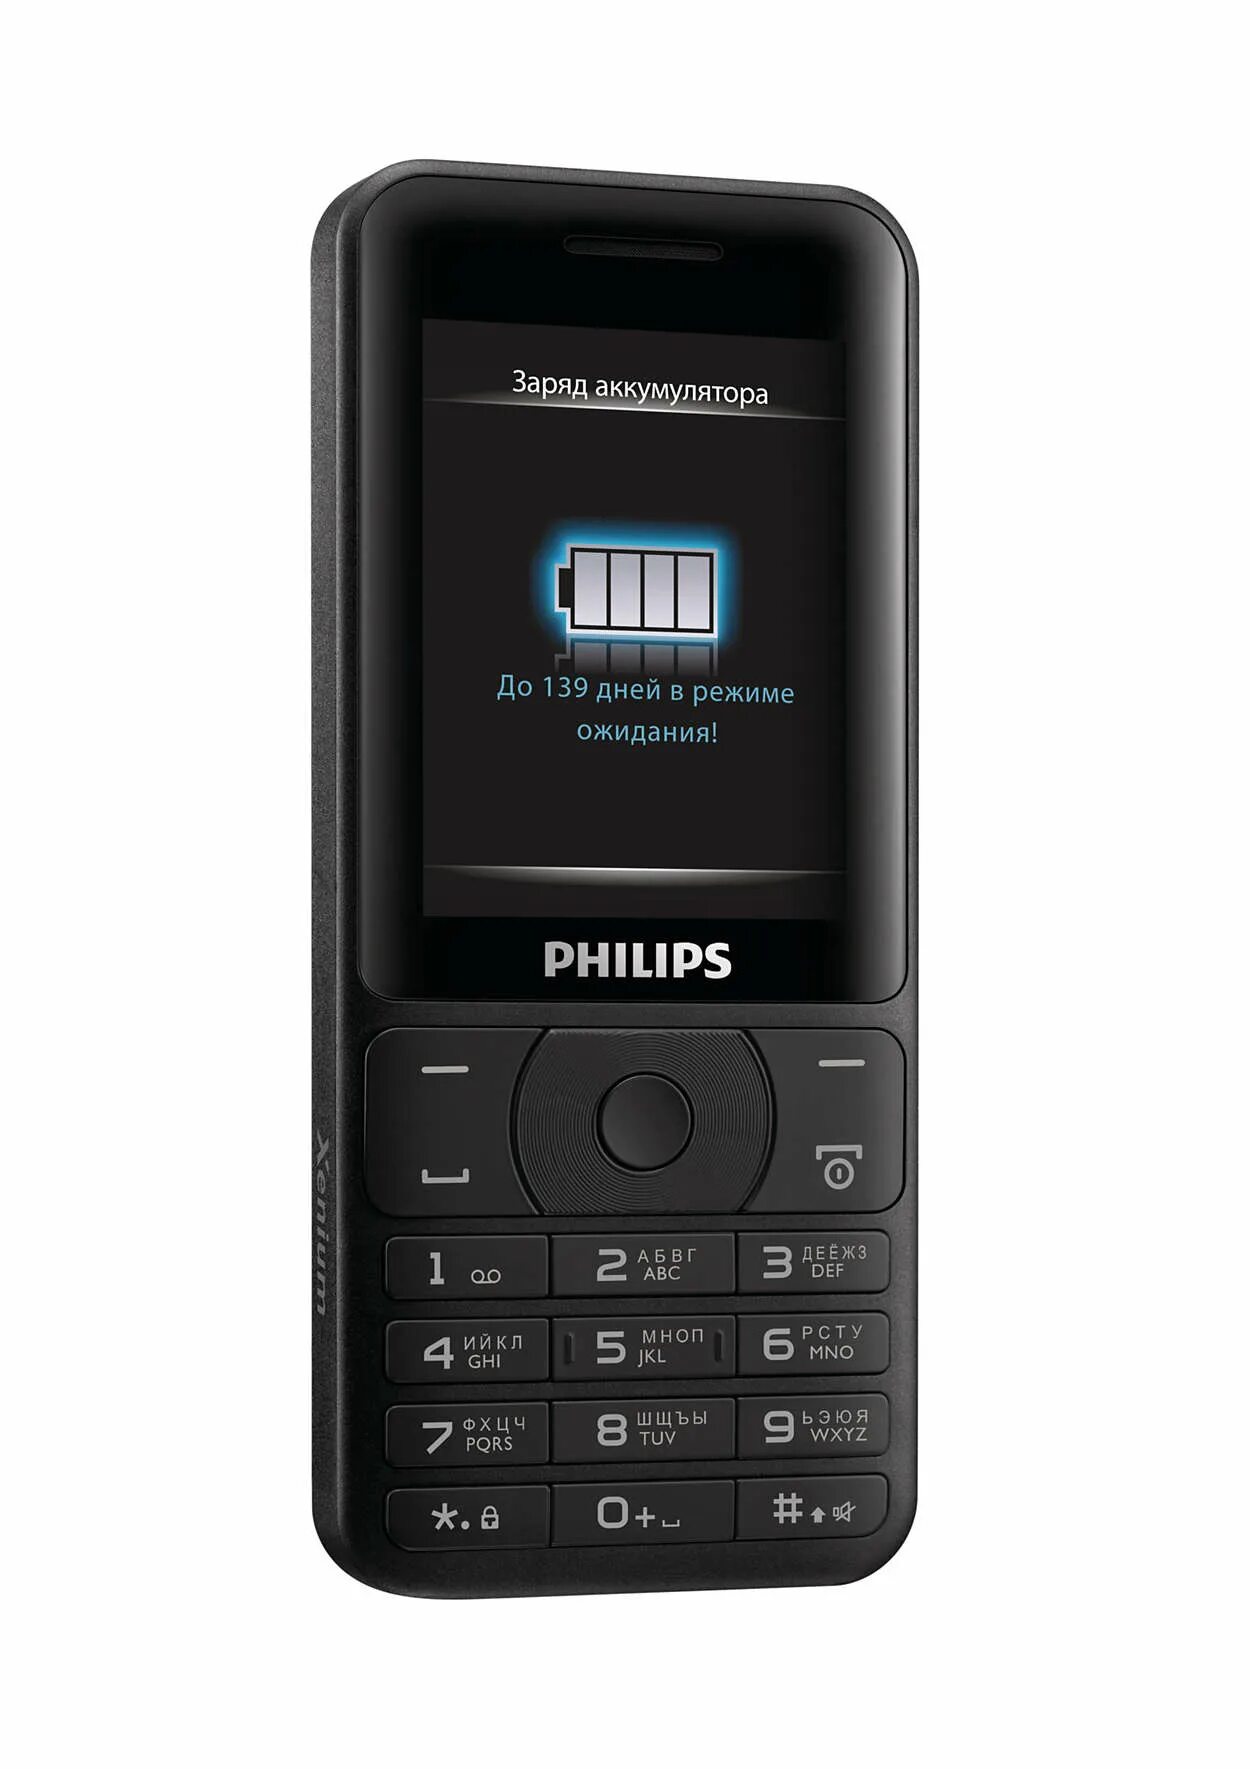 Philips e180 Xenium Black. Philips Xenium e180. Сотовый телефон Philips Xenium e180. Philips Xenium у 180. Купить филлипс